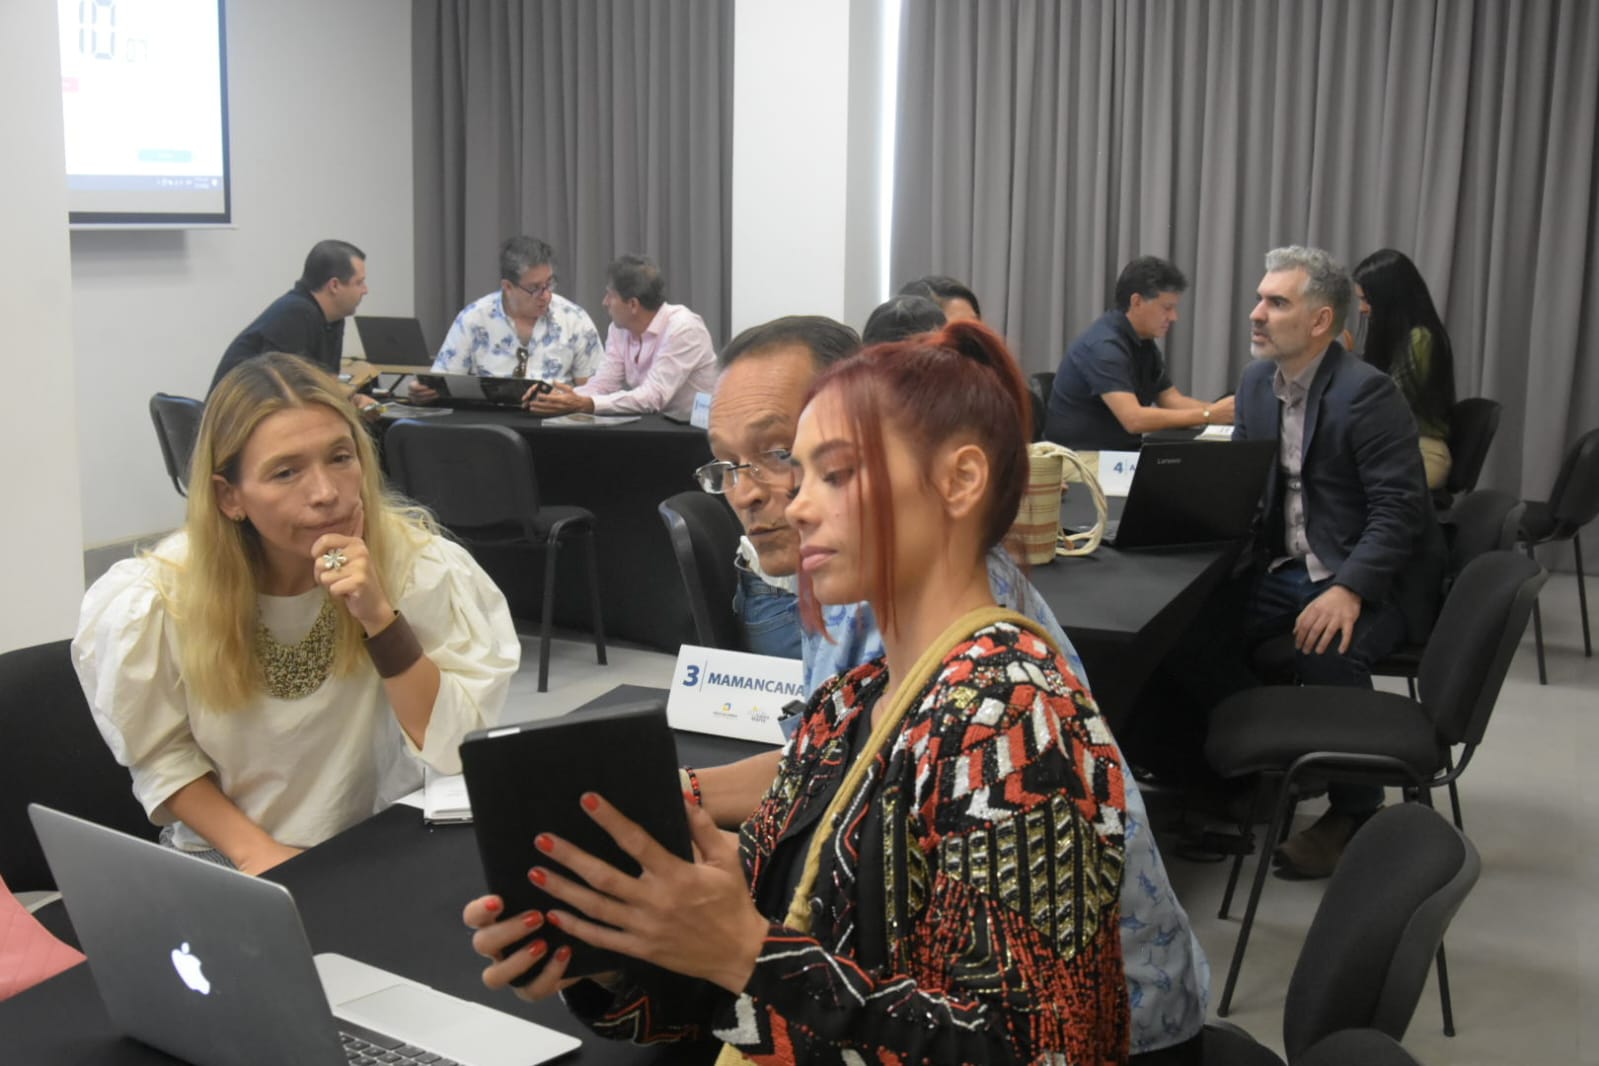 Inversionistas extranjeros exploraron oportunidades en el sector turístico de Santa Marta en el Colombia Investment Summit